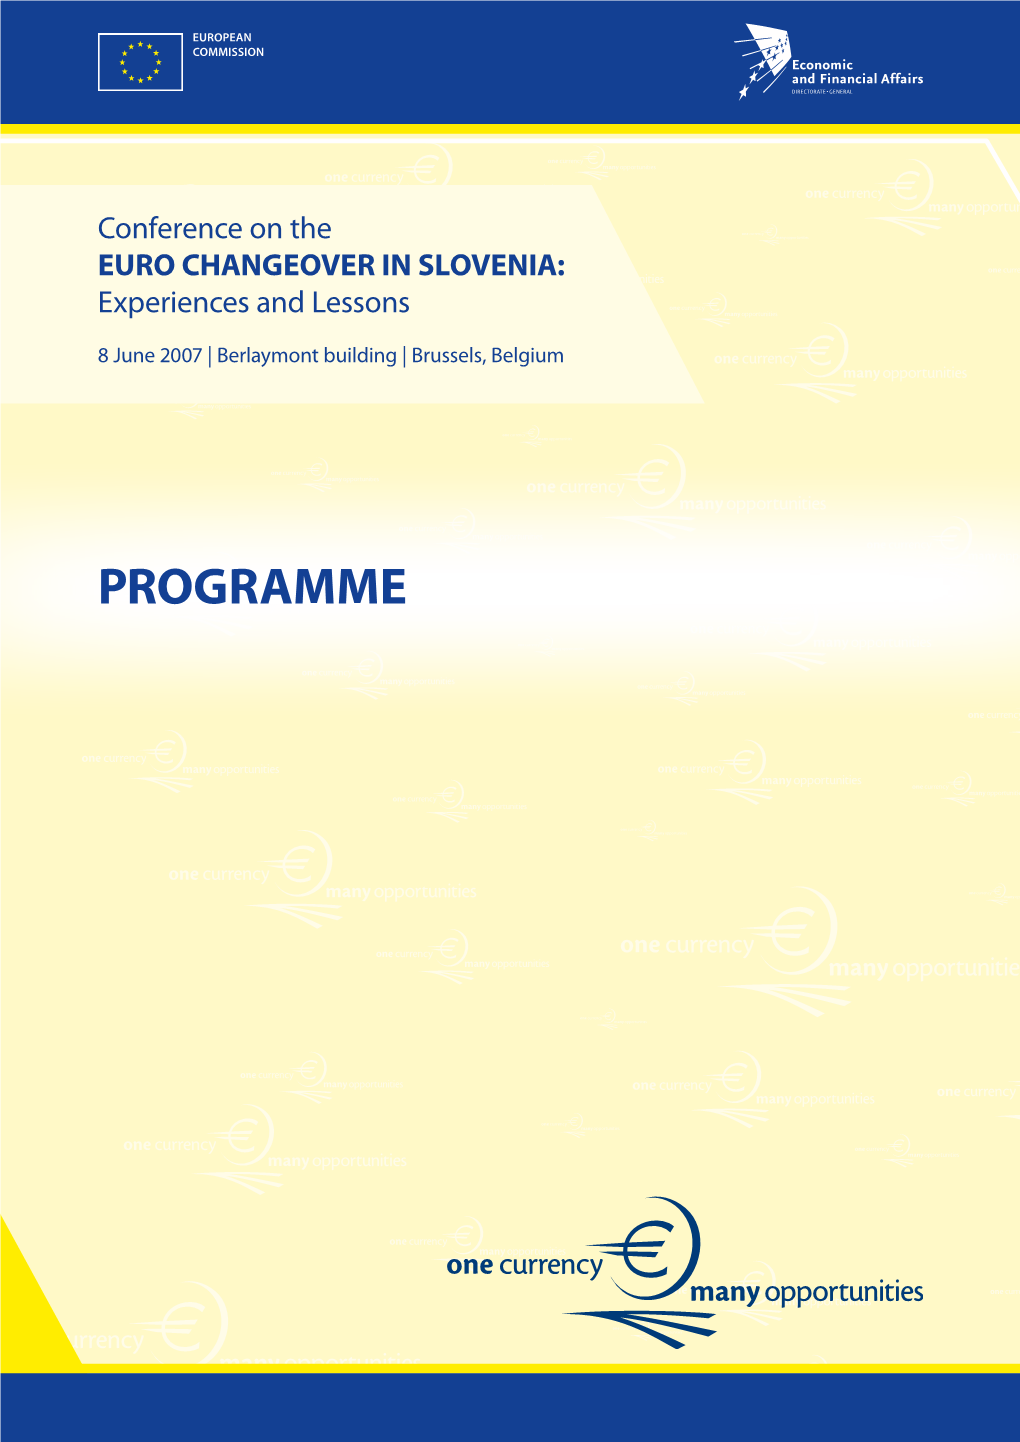 PROGRAMME Programme Programme